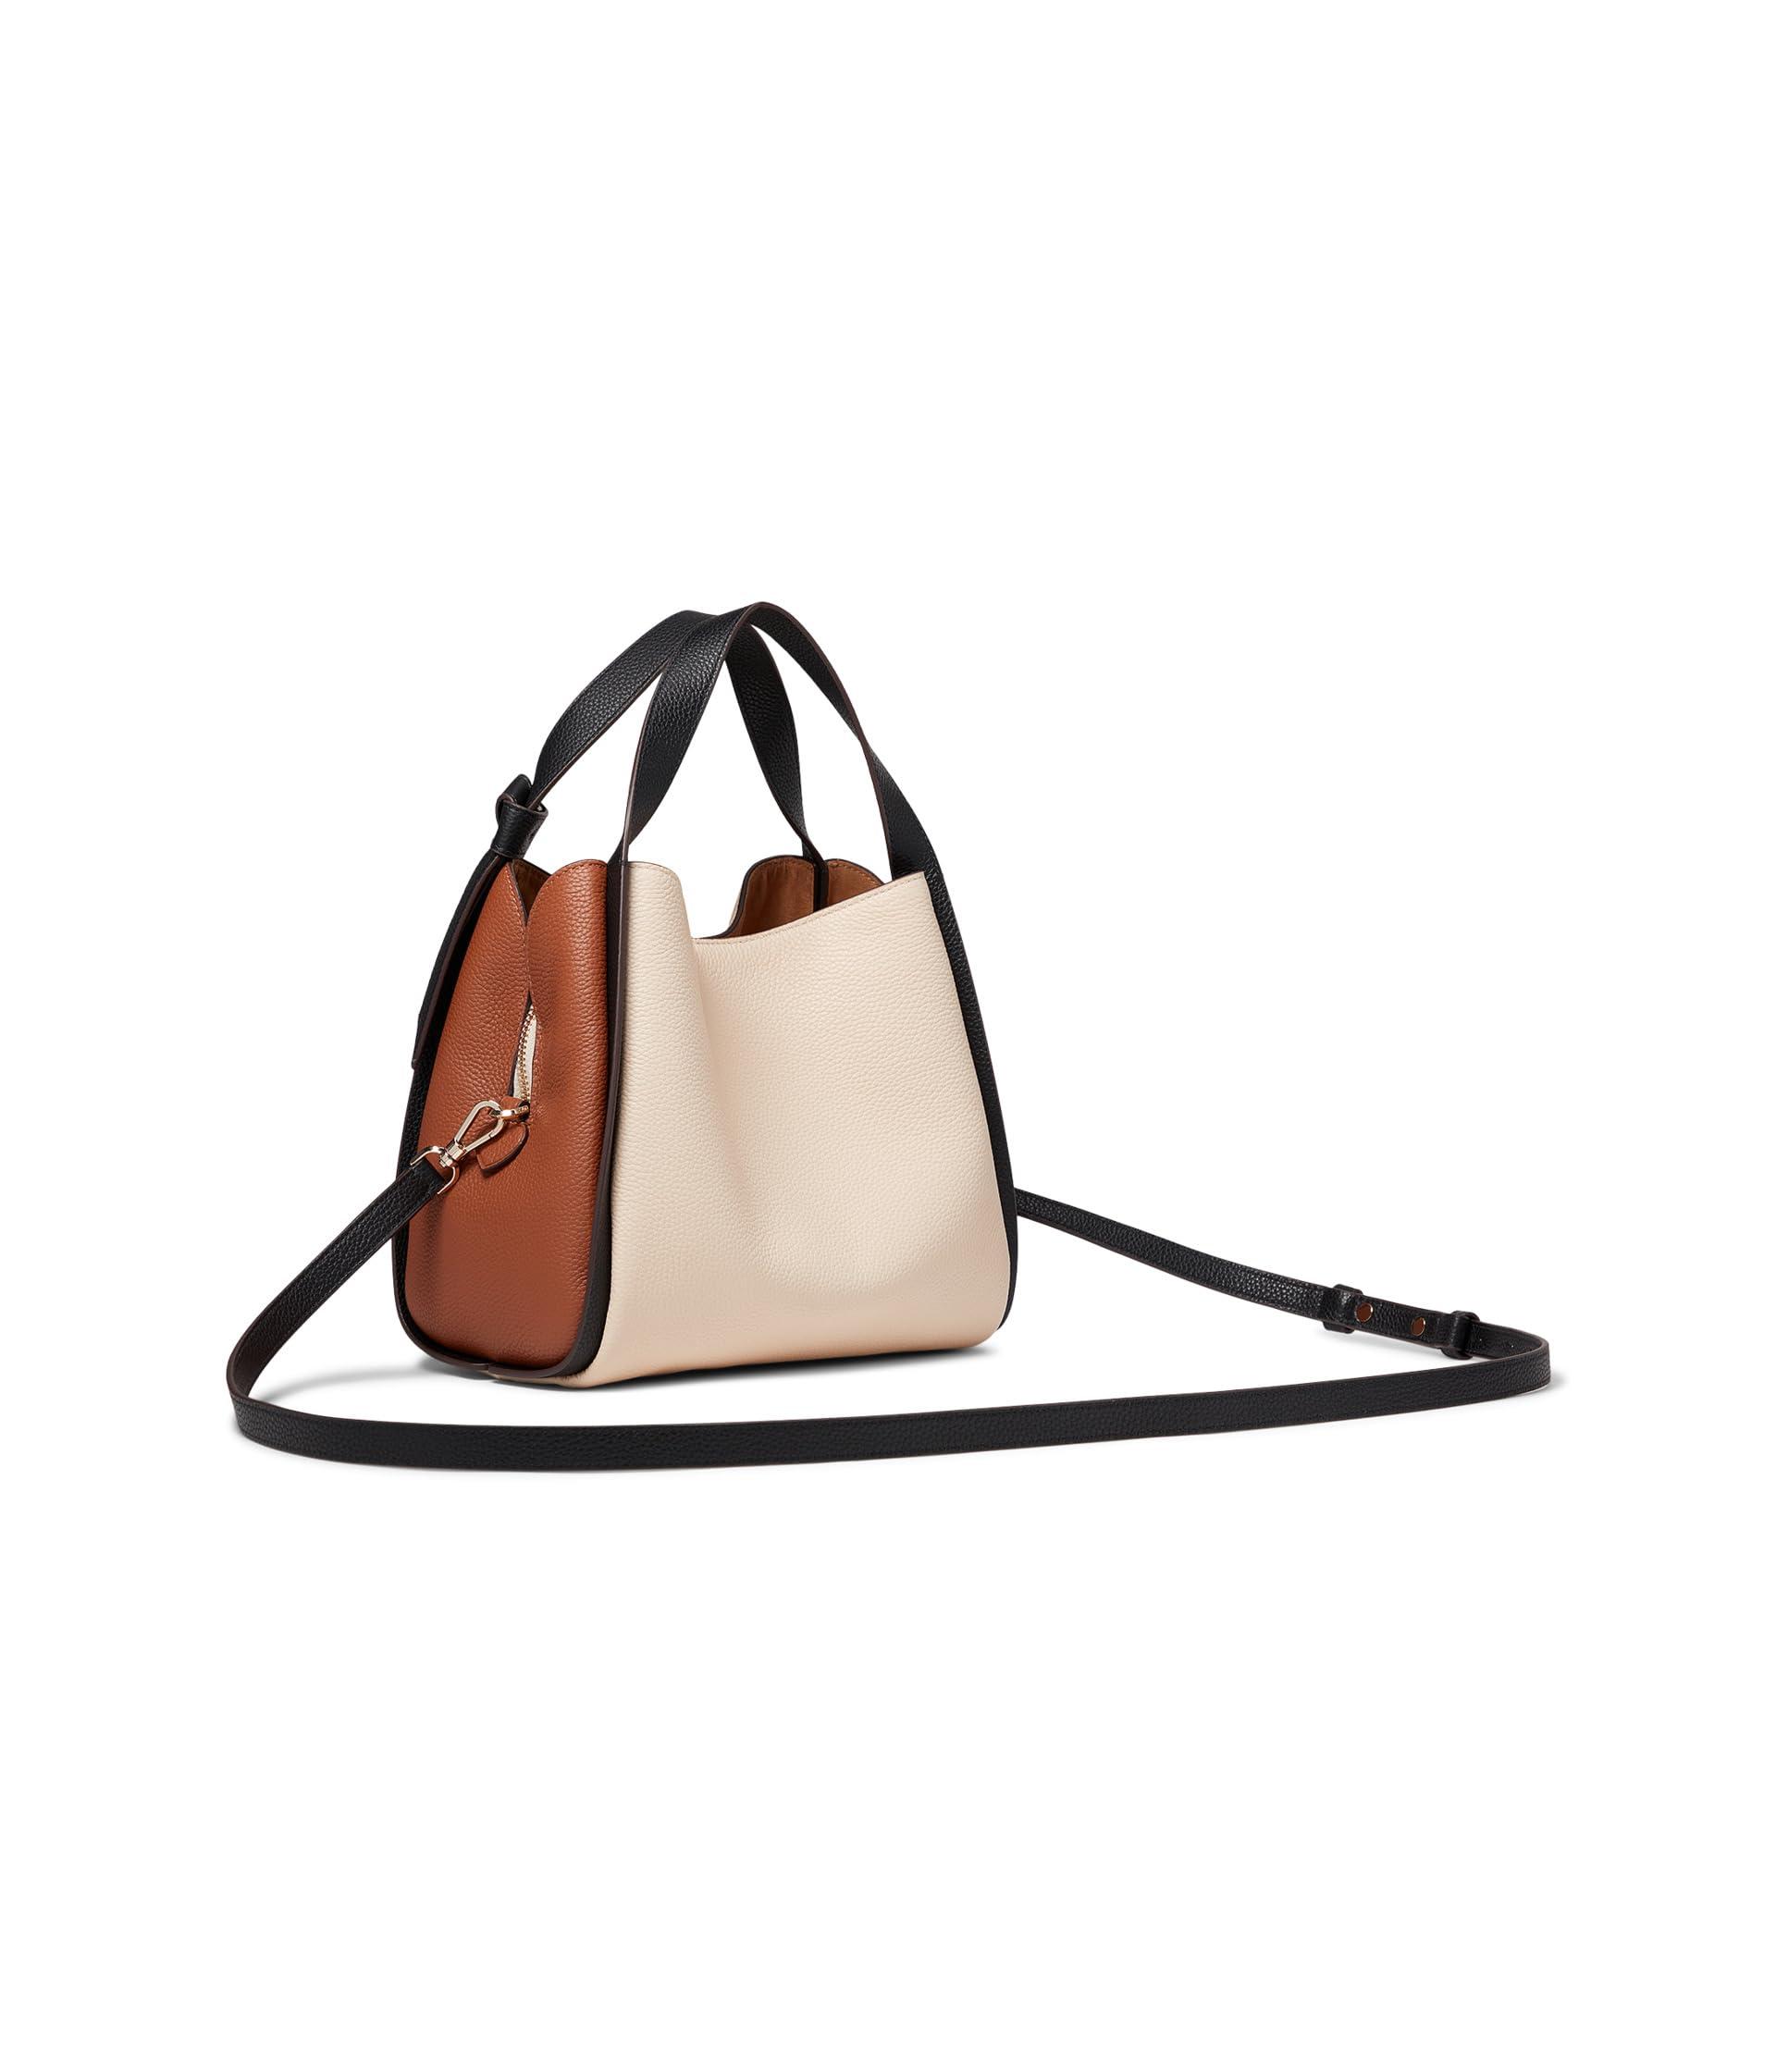 Buy the Kate Spade Beige Crossbody Bag